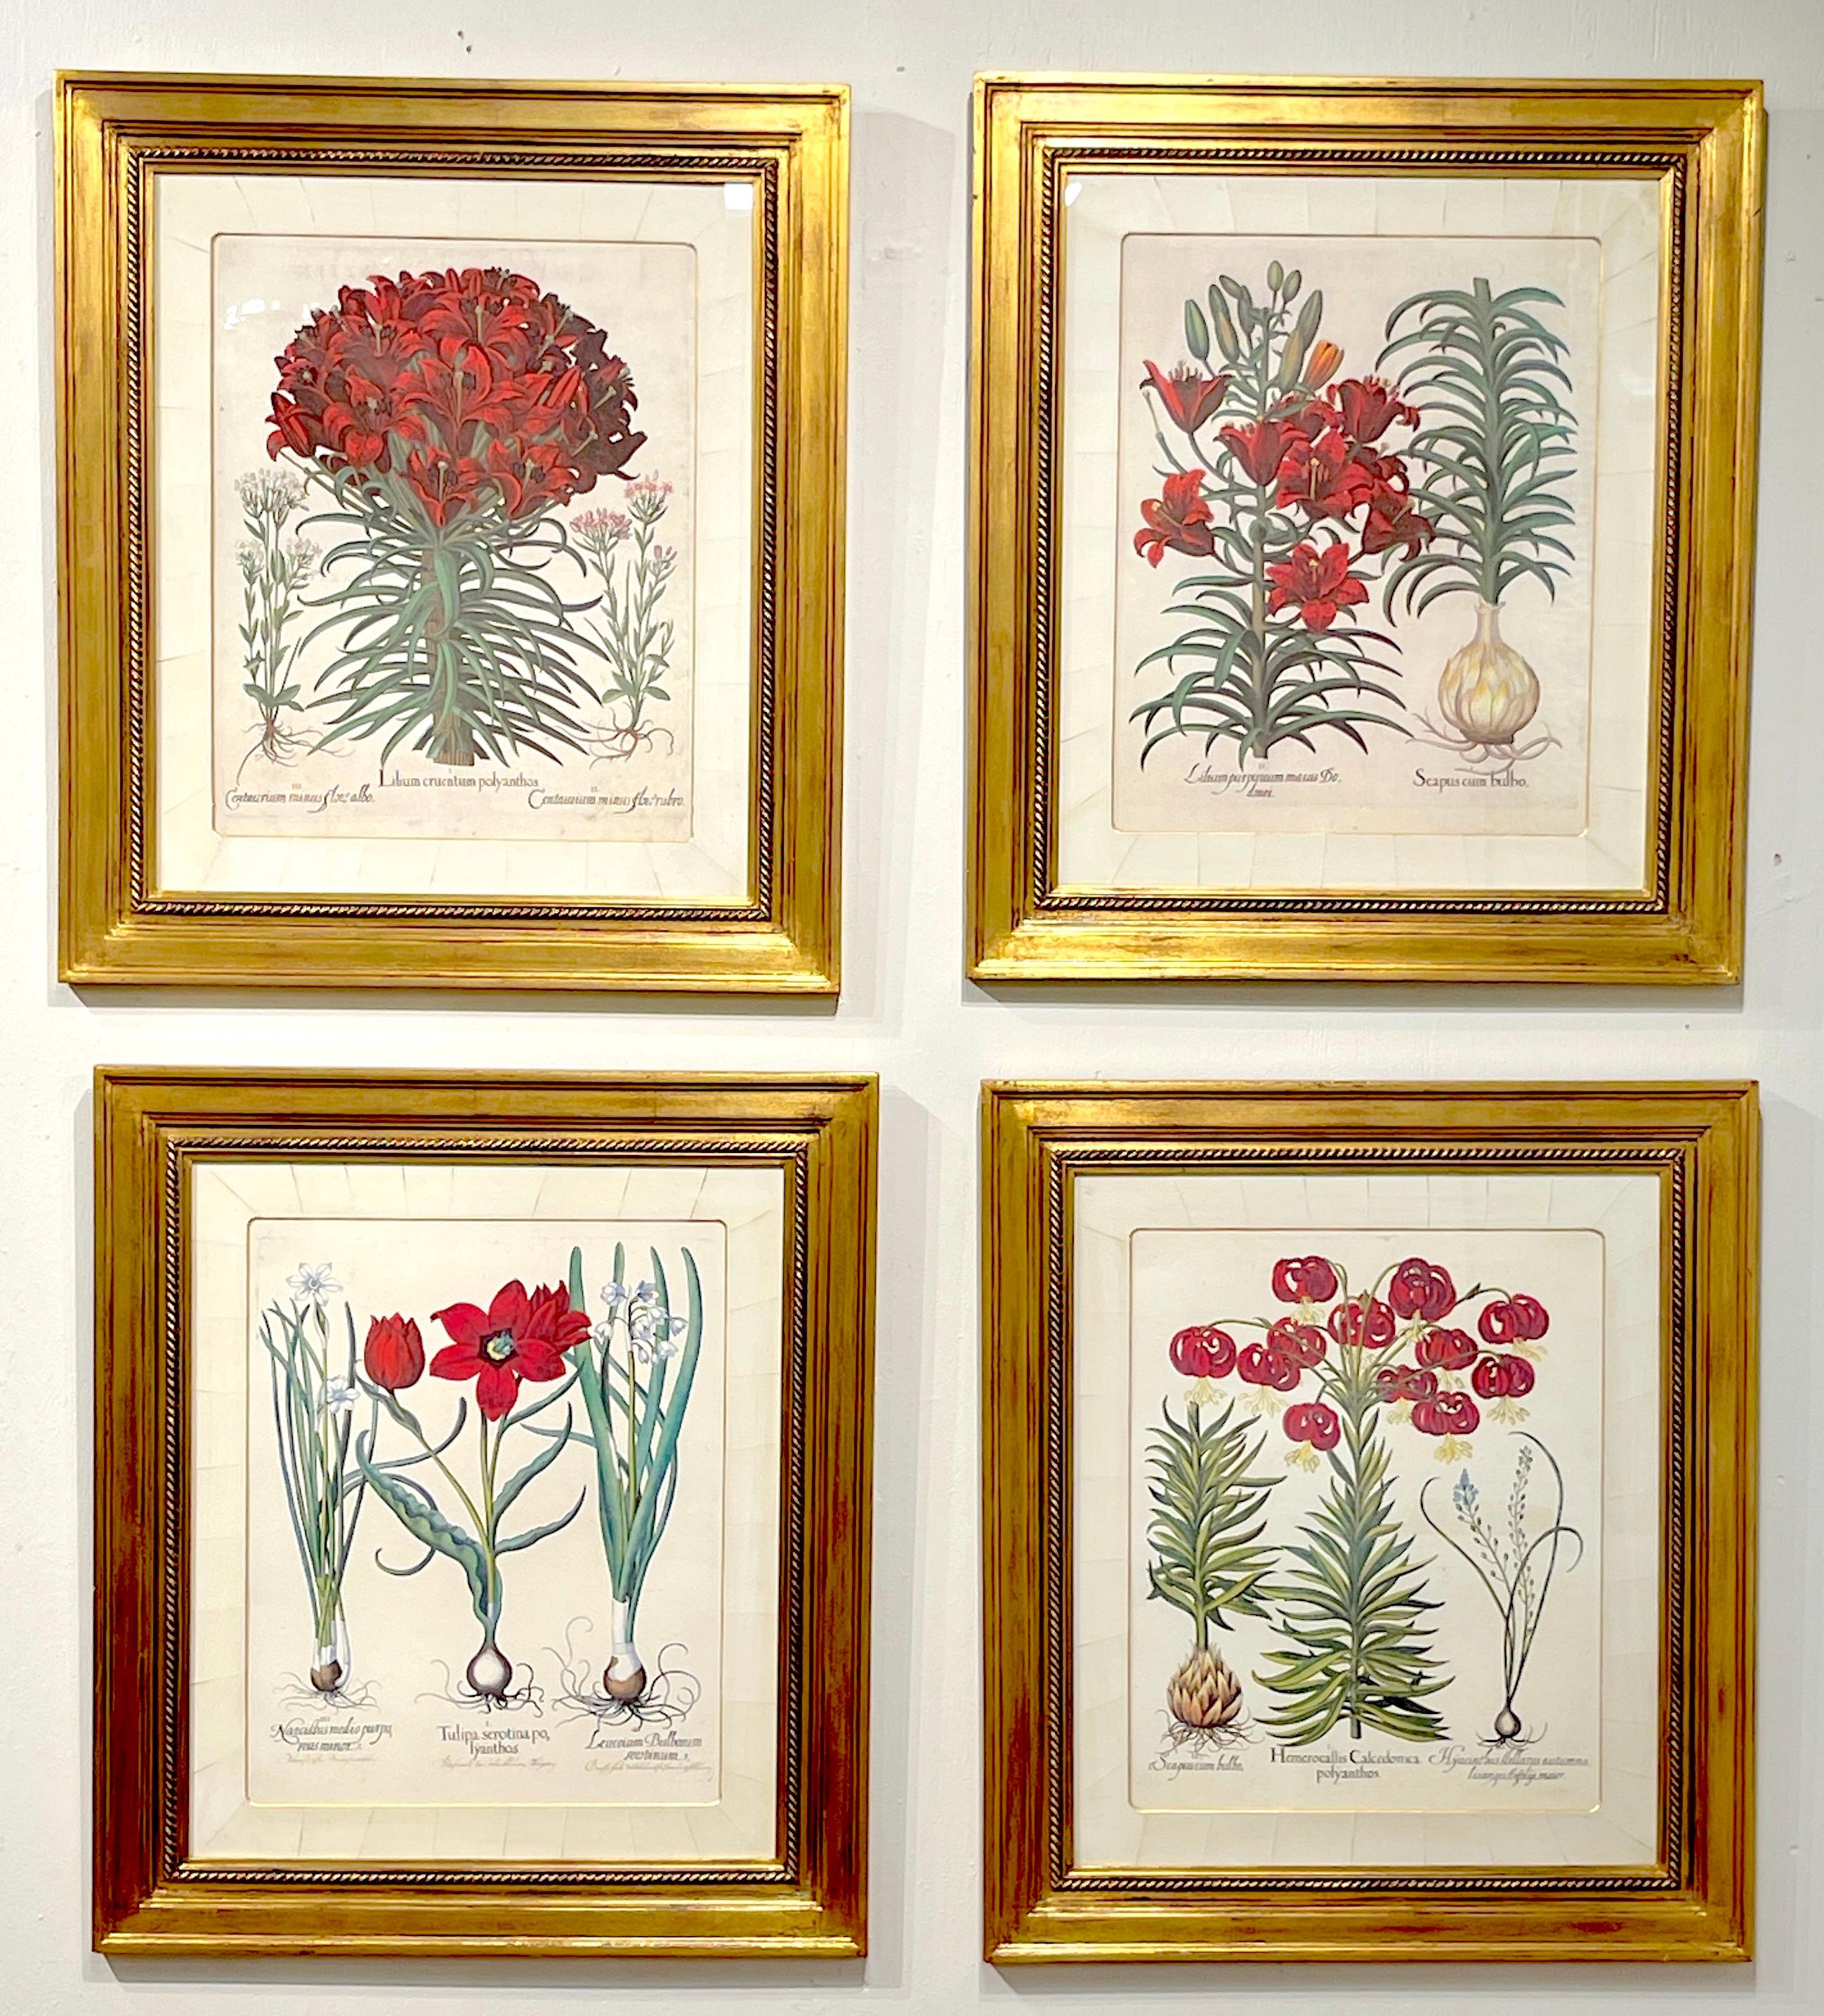 Ensemble de quatre estampes botaniques anciennes de Basilius Besler avec passe-partout en parchemin, vendu comme un ensemble de quatre uniquement.
Basilius Besler (1561-1629)

Cet ensemble encadré personnalisé de  botanicals comprend quatre exquises